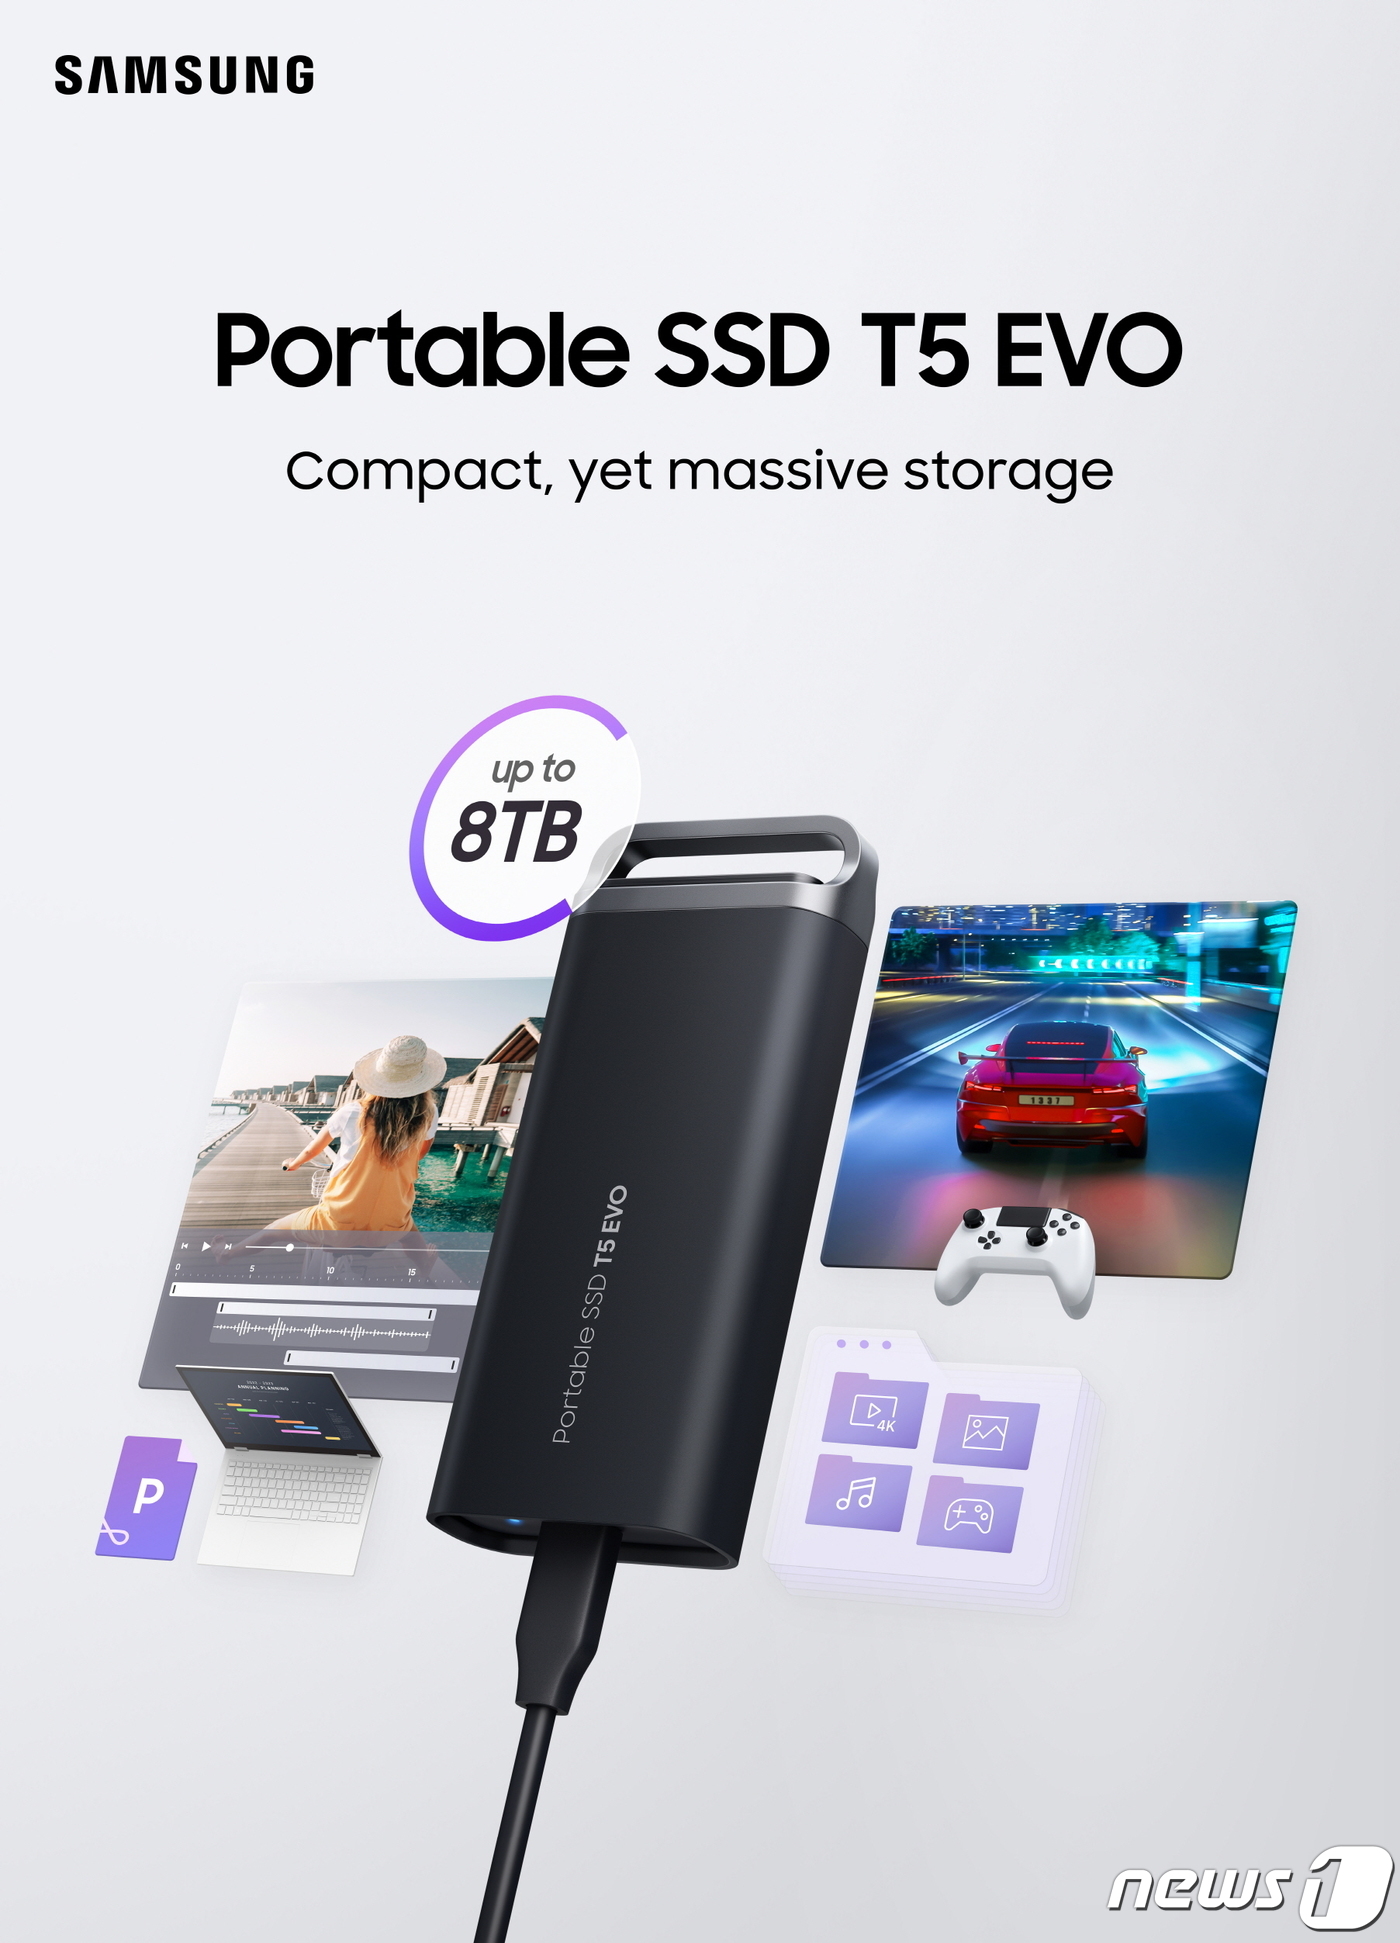 (서울=뉴스1) = 삼성전자는 콤팩트한 크기에 업계 최대 수준인 8TB 용량을 구현한 포터블 SSD 신제품 'T5 EVO'를 출시했다고 15일 밝혔다.'T5 EVO'는 휴대성과 내 …